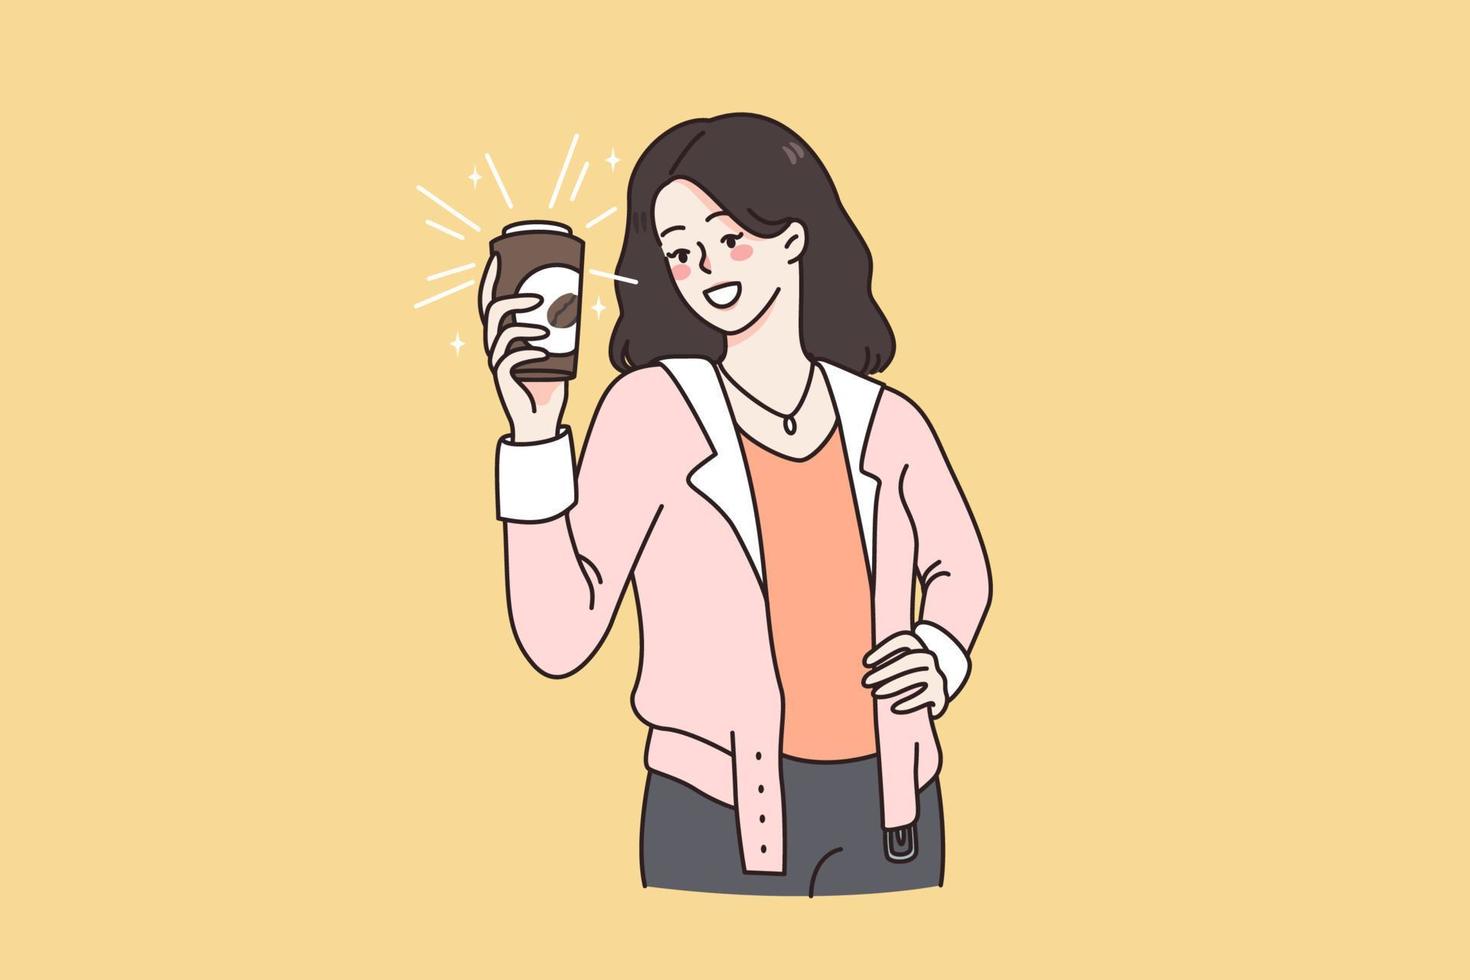 genieten van smakelijk koffie drinken concept. jong glimlachen vrouw staand en Holding kop van meenemen vers gebrouwen koffie in handen gevoel positief vector illustratie